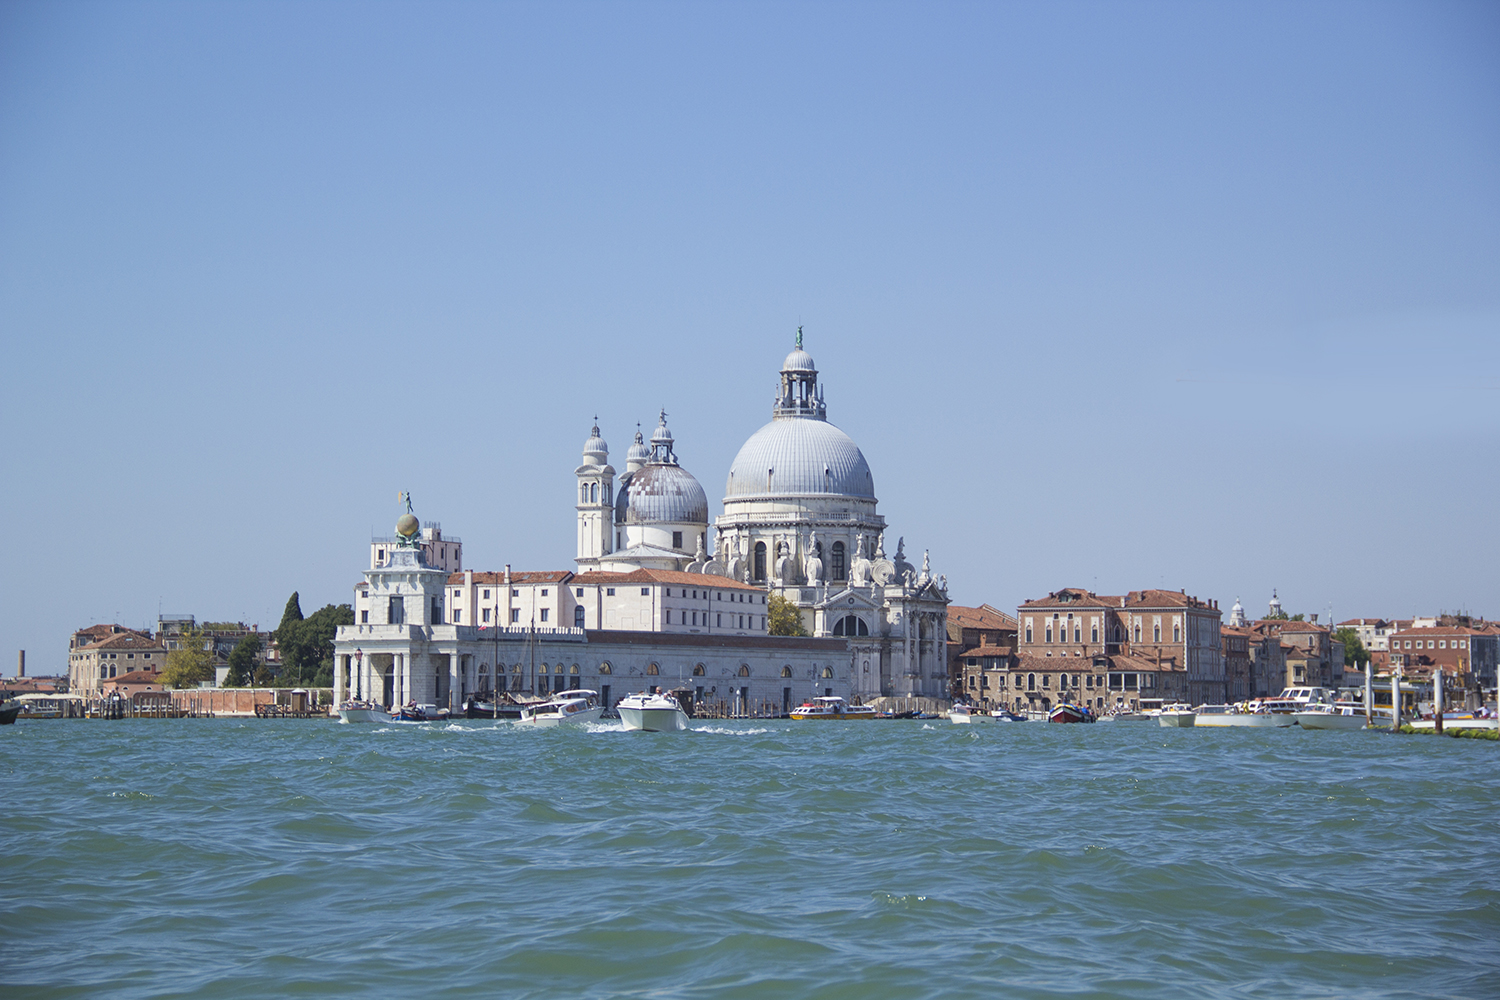 Santa Maria della Salute in Venice